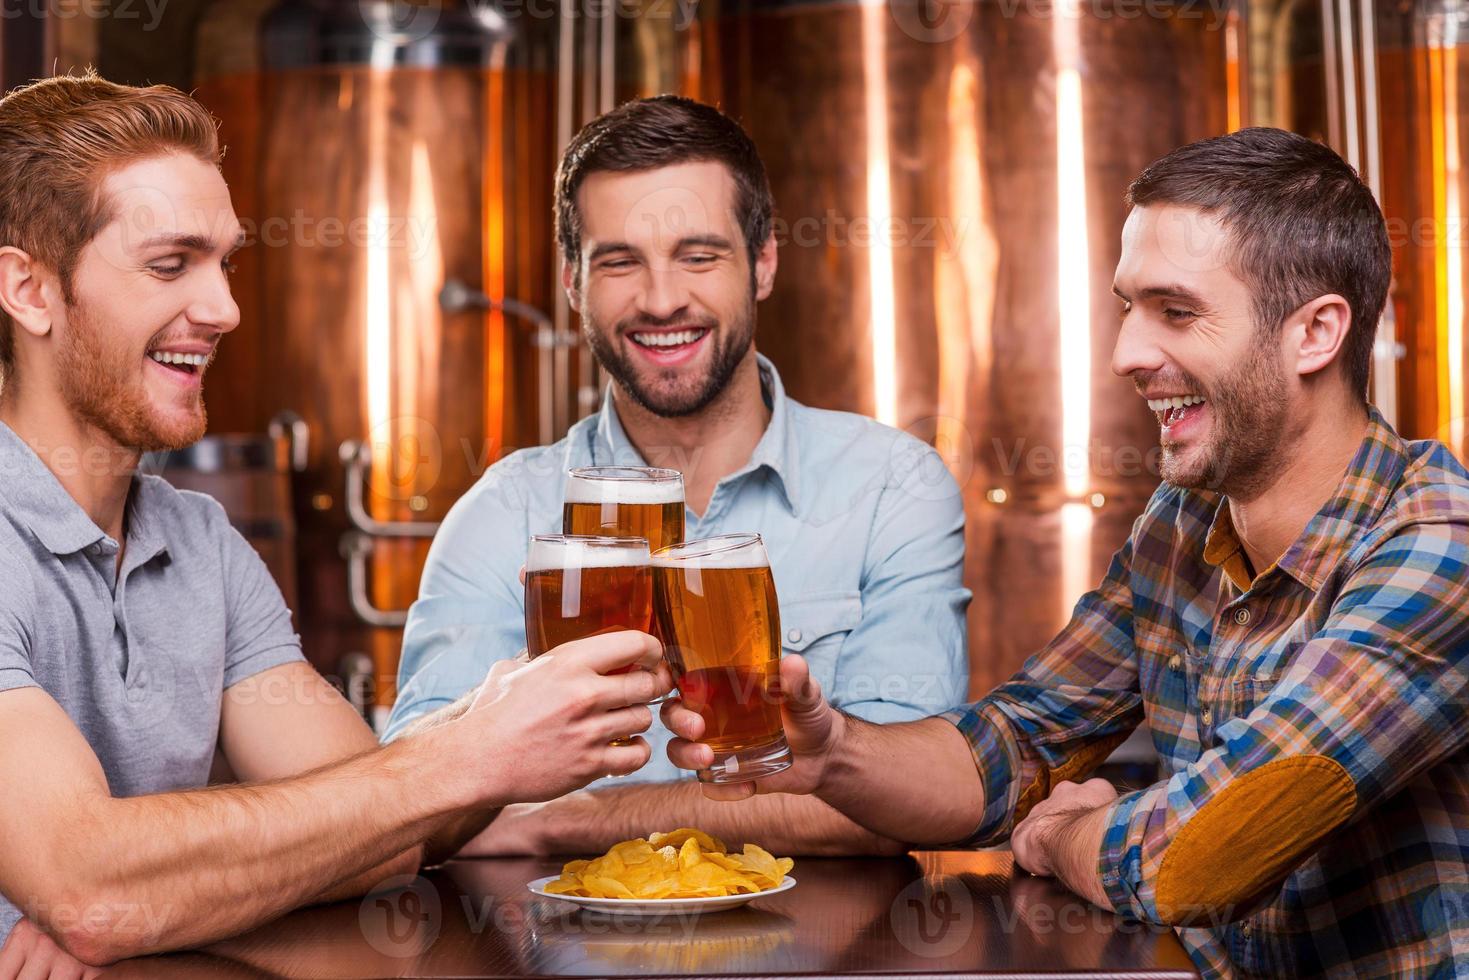 reunirse con viejos amigos en el bar. tres jóvenes felices con ropa informal brindando con cerveza y sonriendo mientras se sientan juntos en un pub de cerveza foto